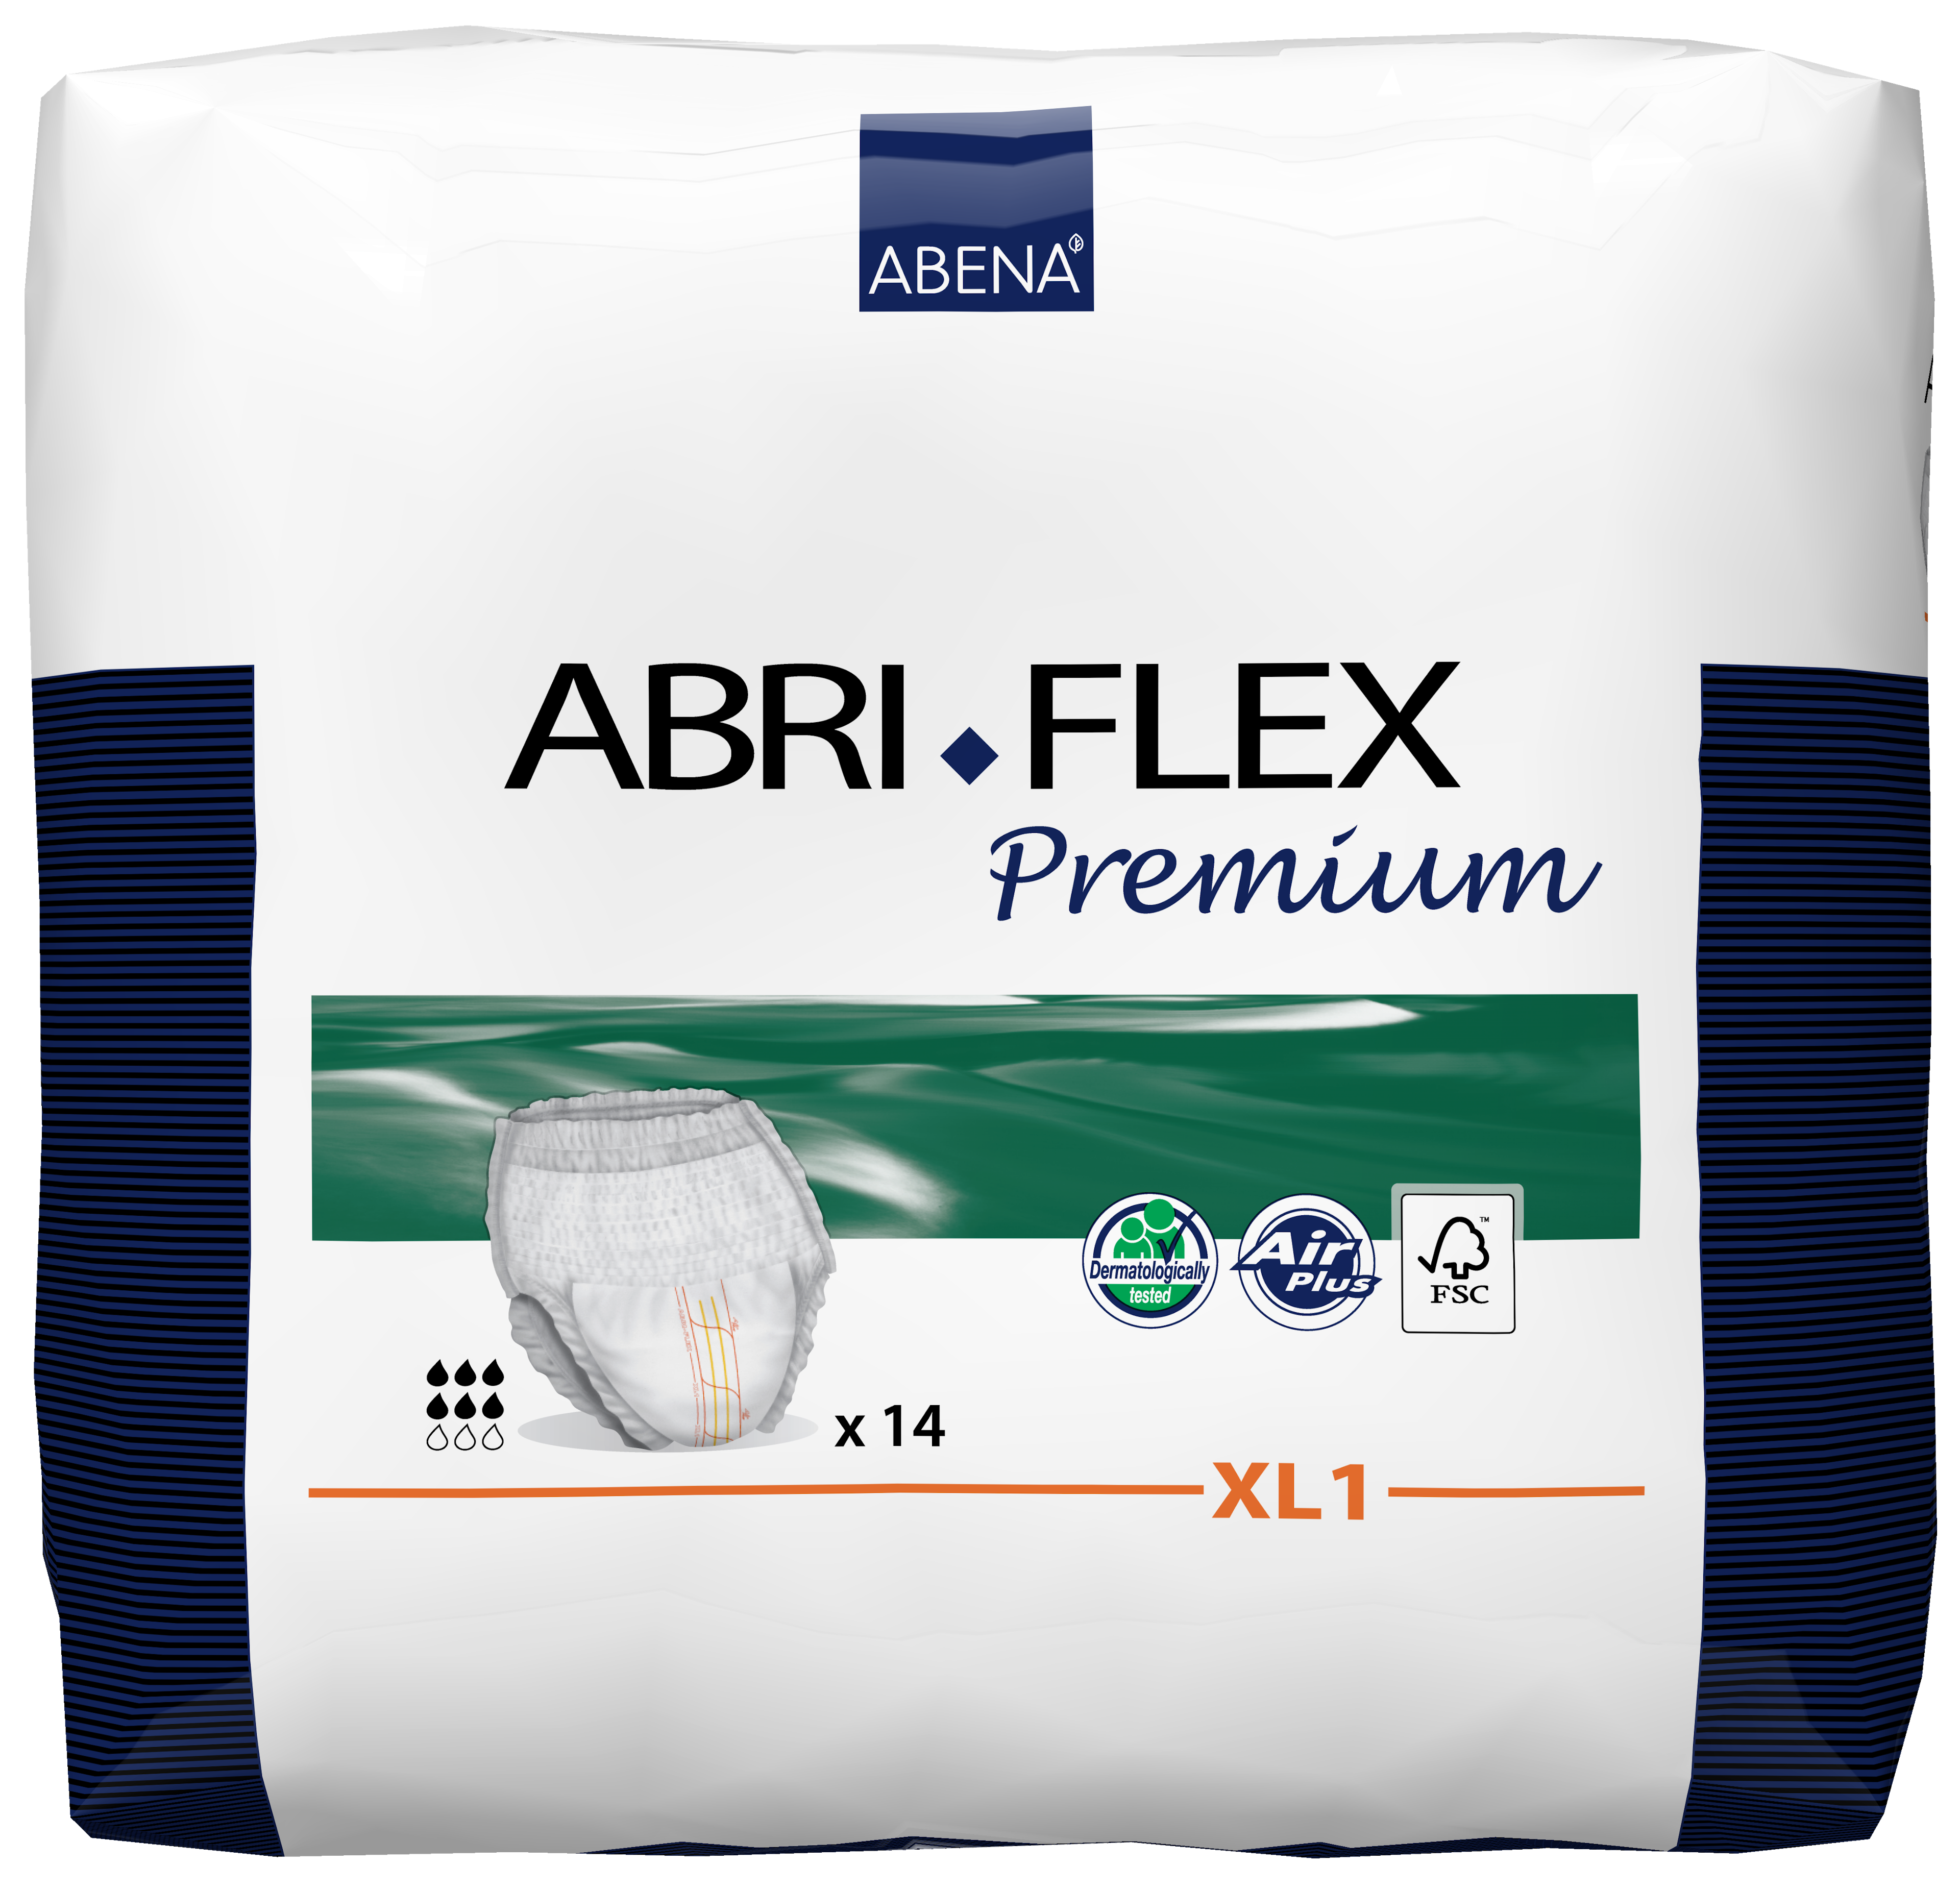 Abena Abri-Flex Pull-Up Underwear, XL1